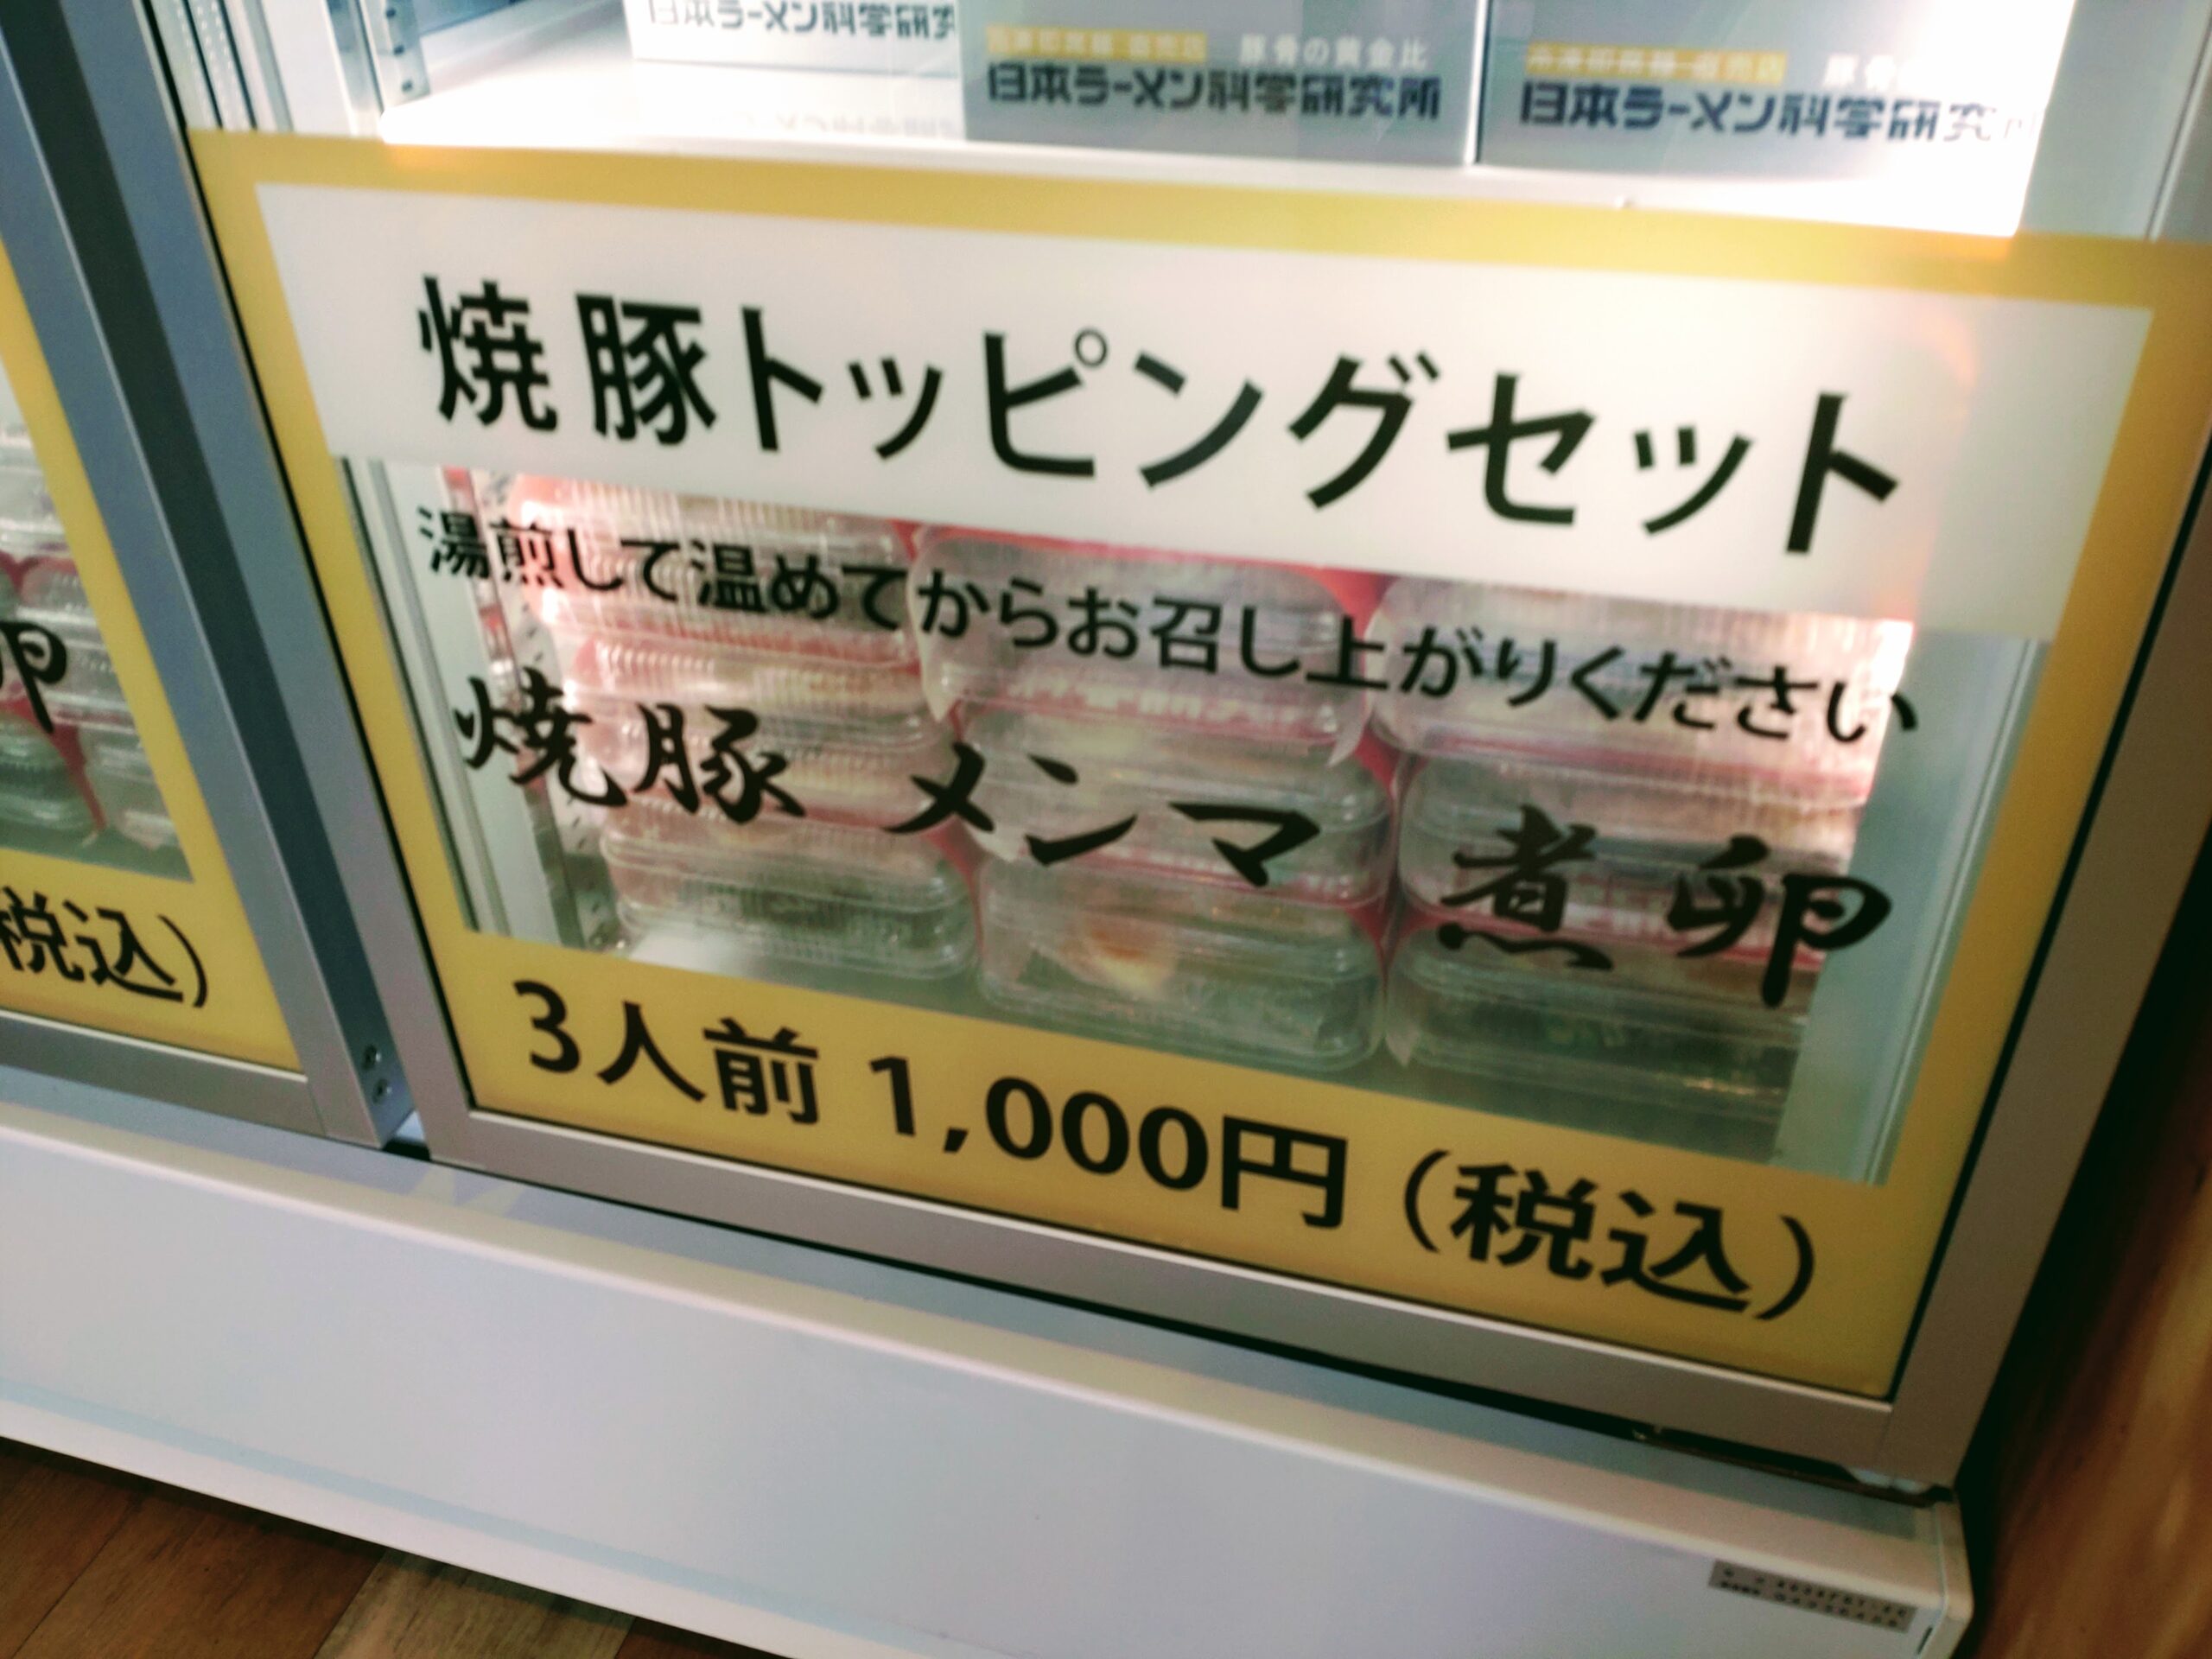 トッピングセット(1000円)